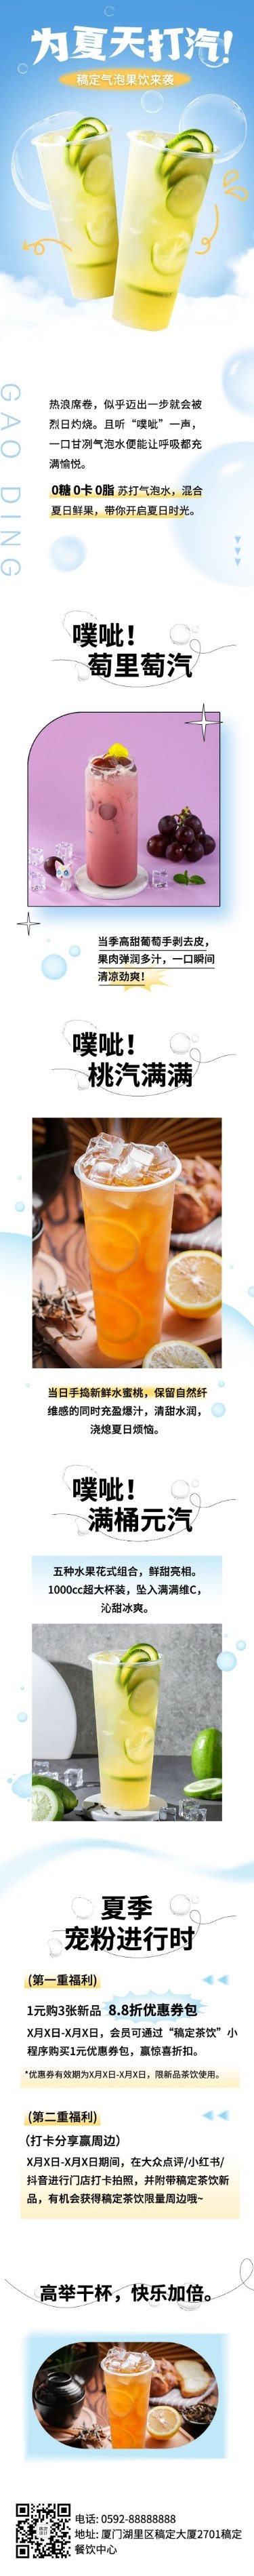 简约清新夏季营销奶茶饮品新品上市活动营销文章长图预览效果